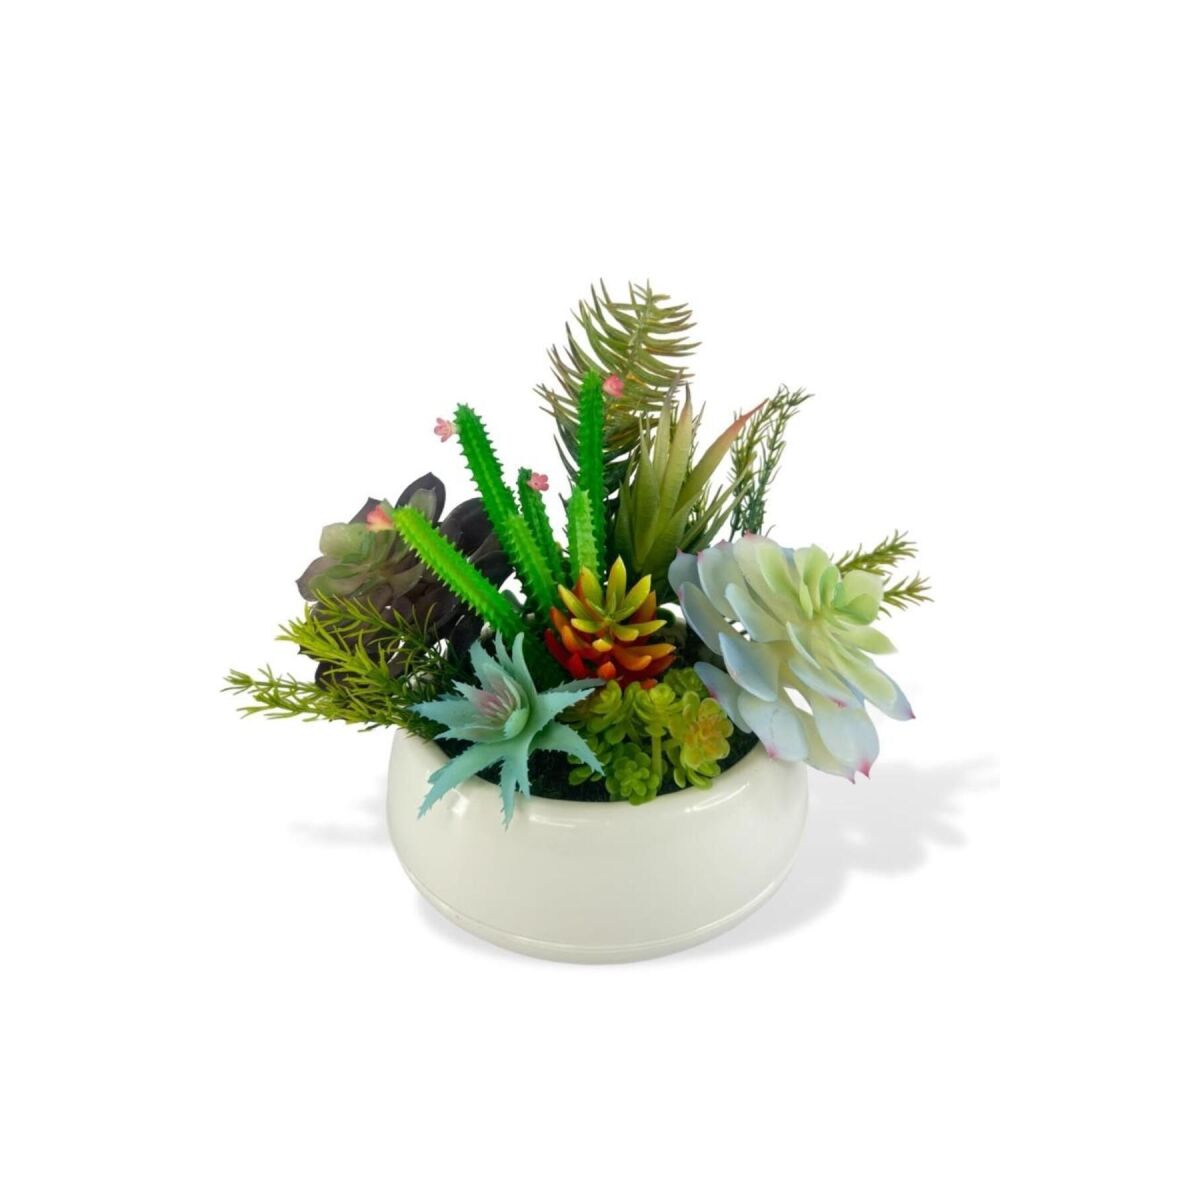 Yapay Çiçek Kaktüs Sukulent Aranjmanı Krem Renk Plastik Saksıda 10 Adet Karışık Model Skulent